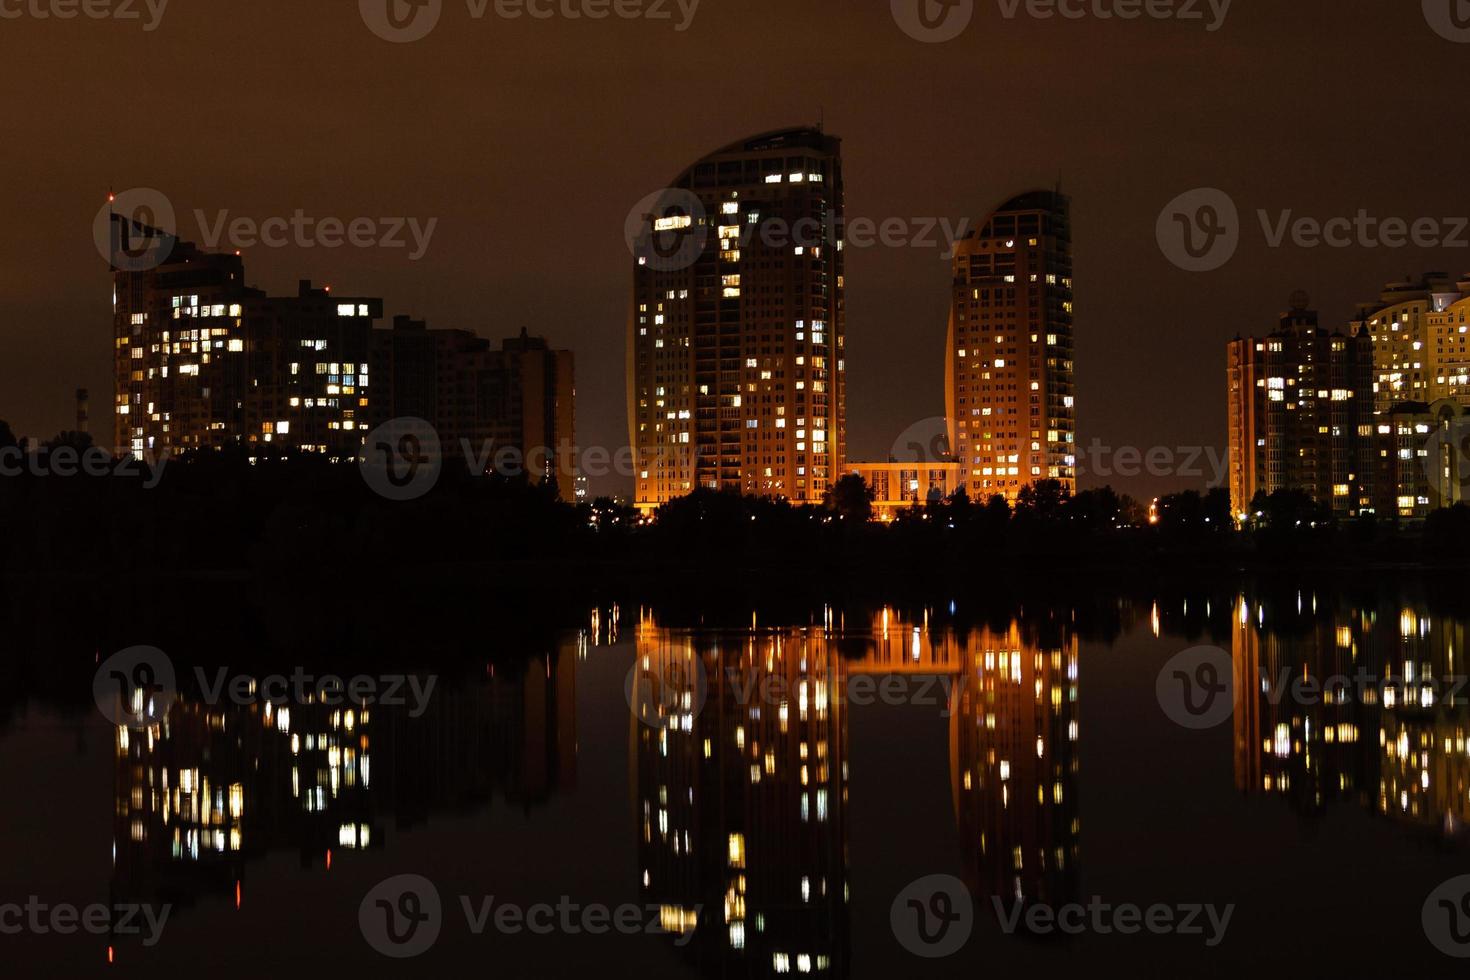 cidade noturna com reflexo de casas no rio foto